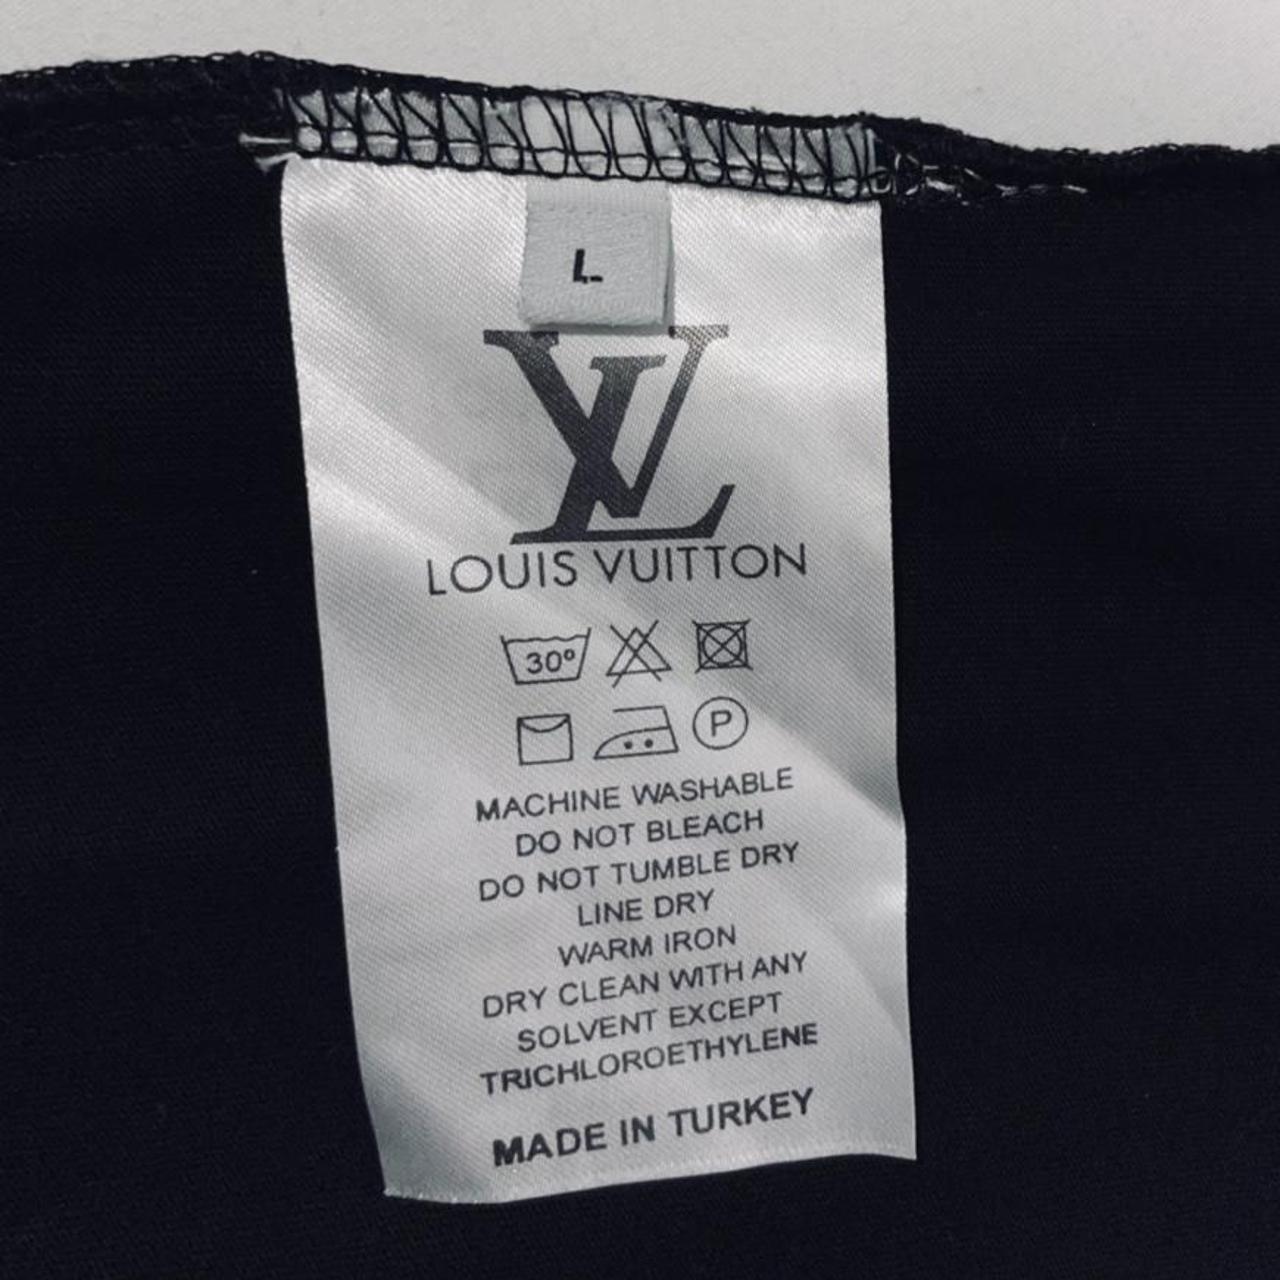 Stylish Louis Vuitton Paris Texas - Depop